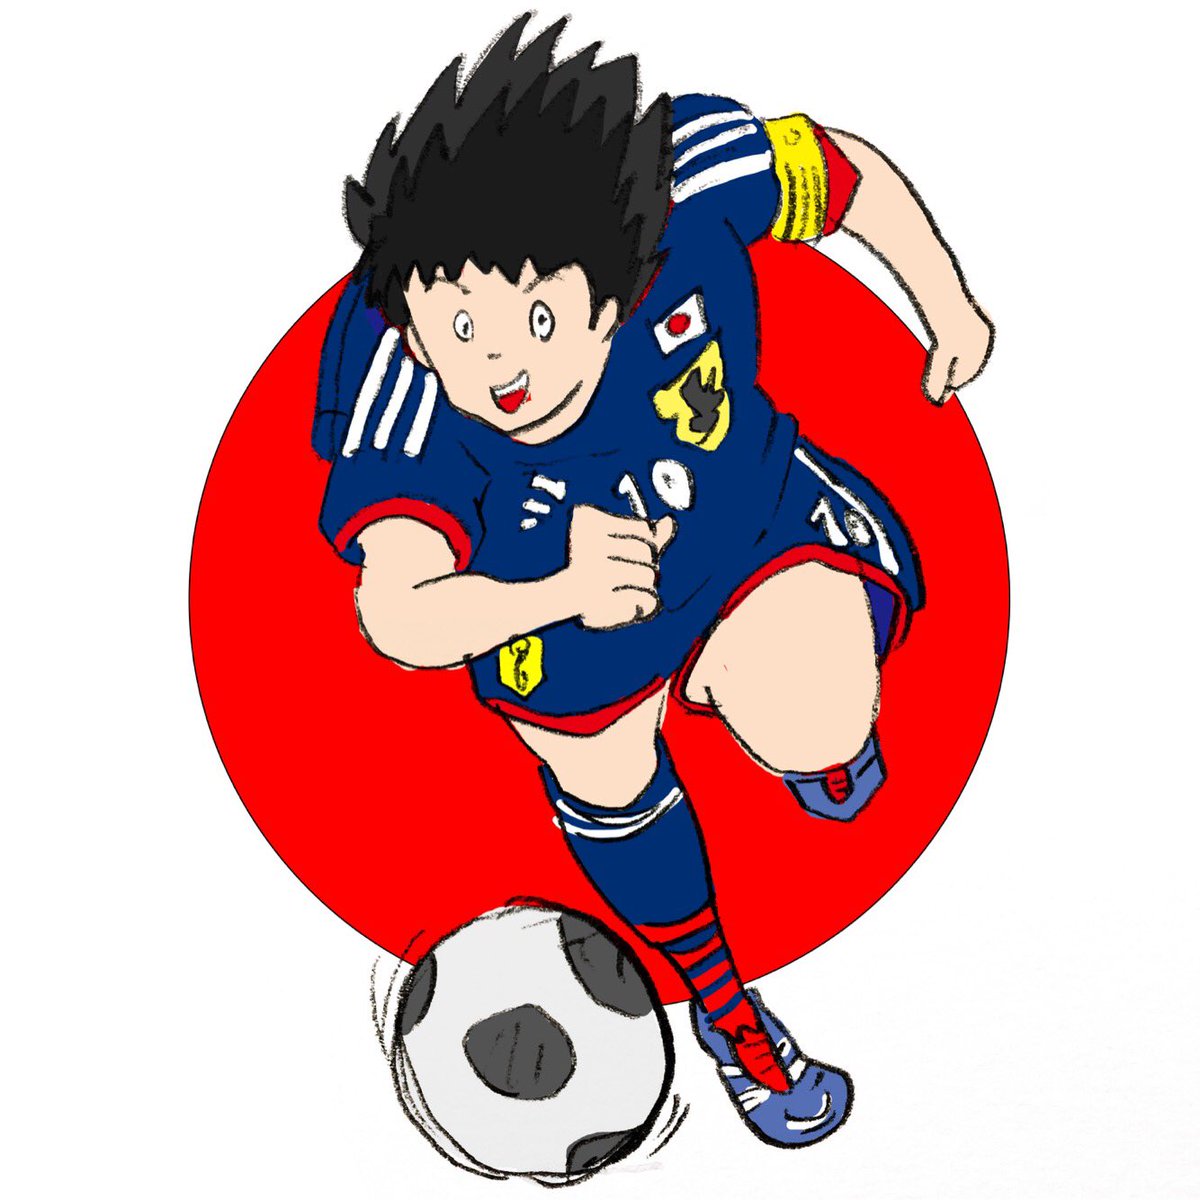 おも満しろ太郎 ボールは友達 キャプテン翼 大空翼 Soccer サッカー 日本代表 イラスト Illustration Character キャラクター おも満しろ太郎